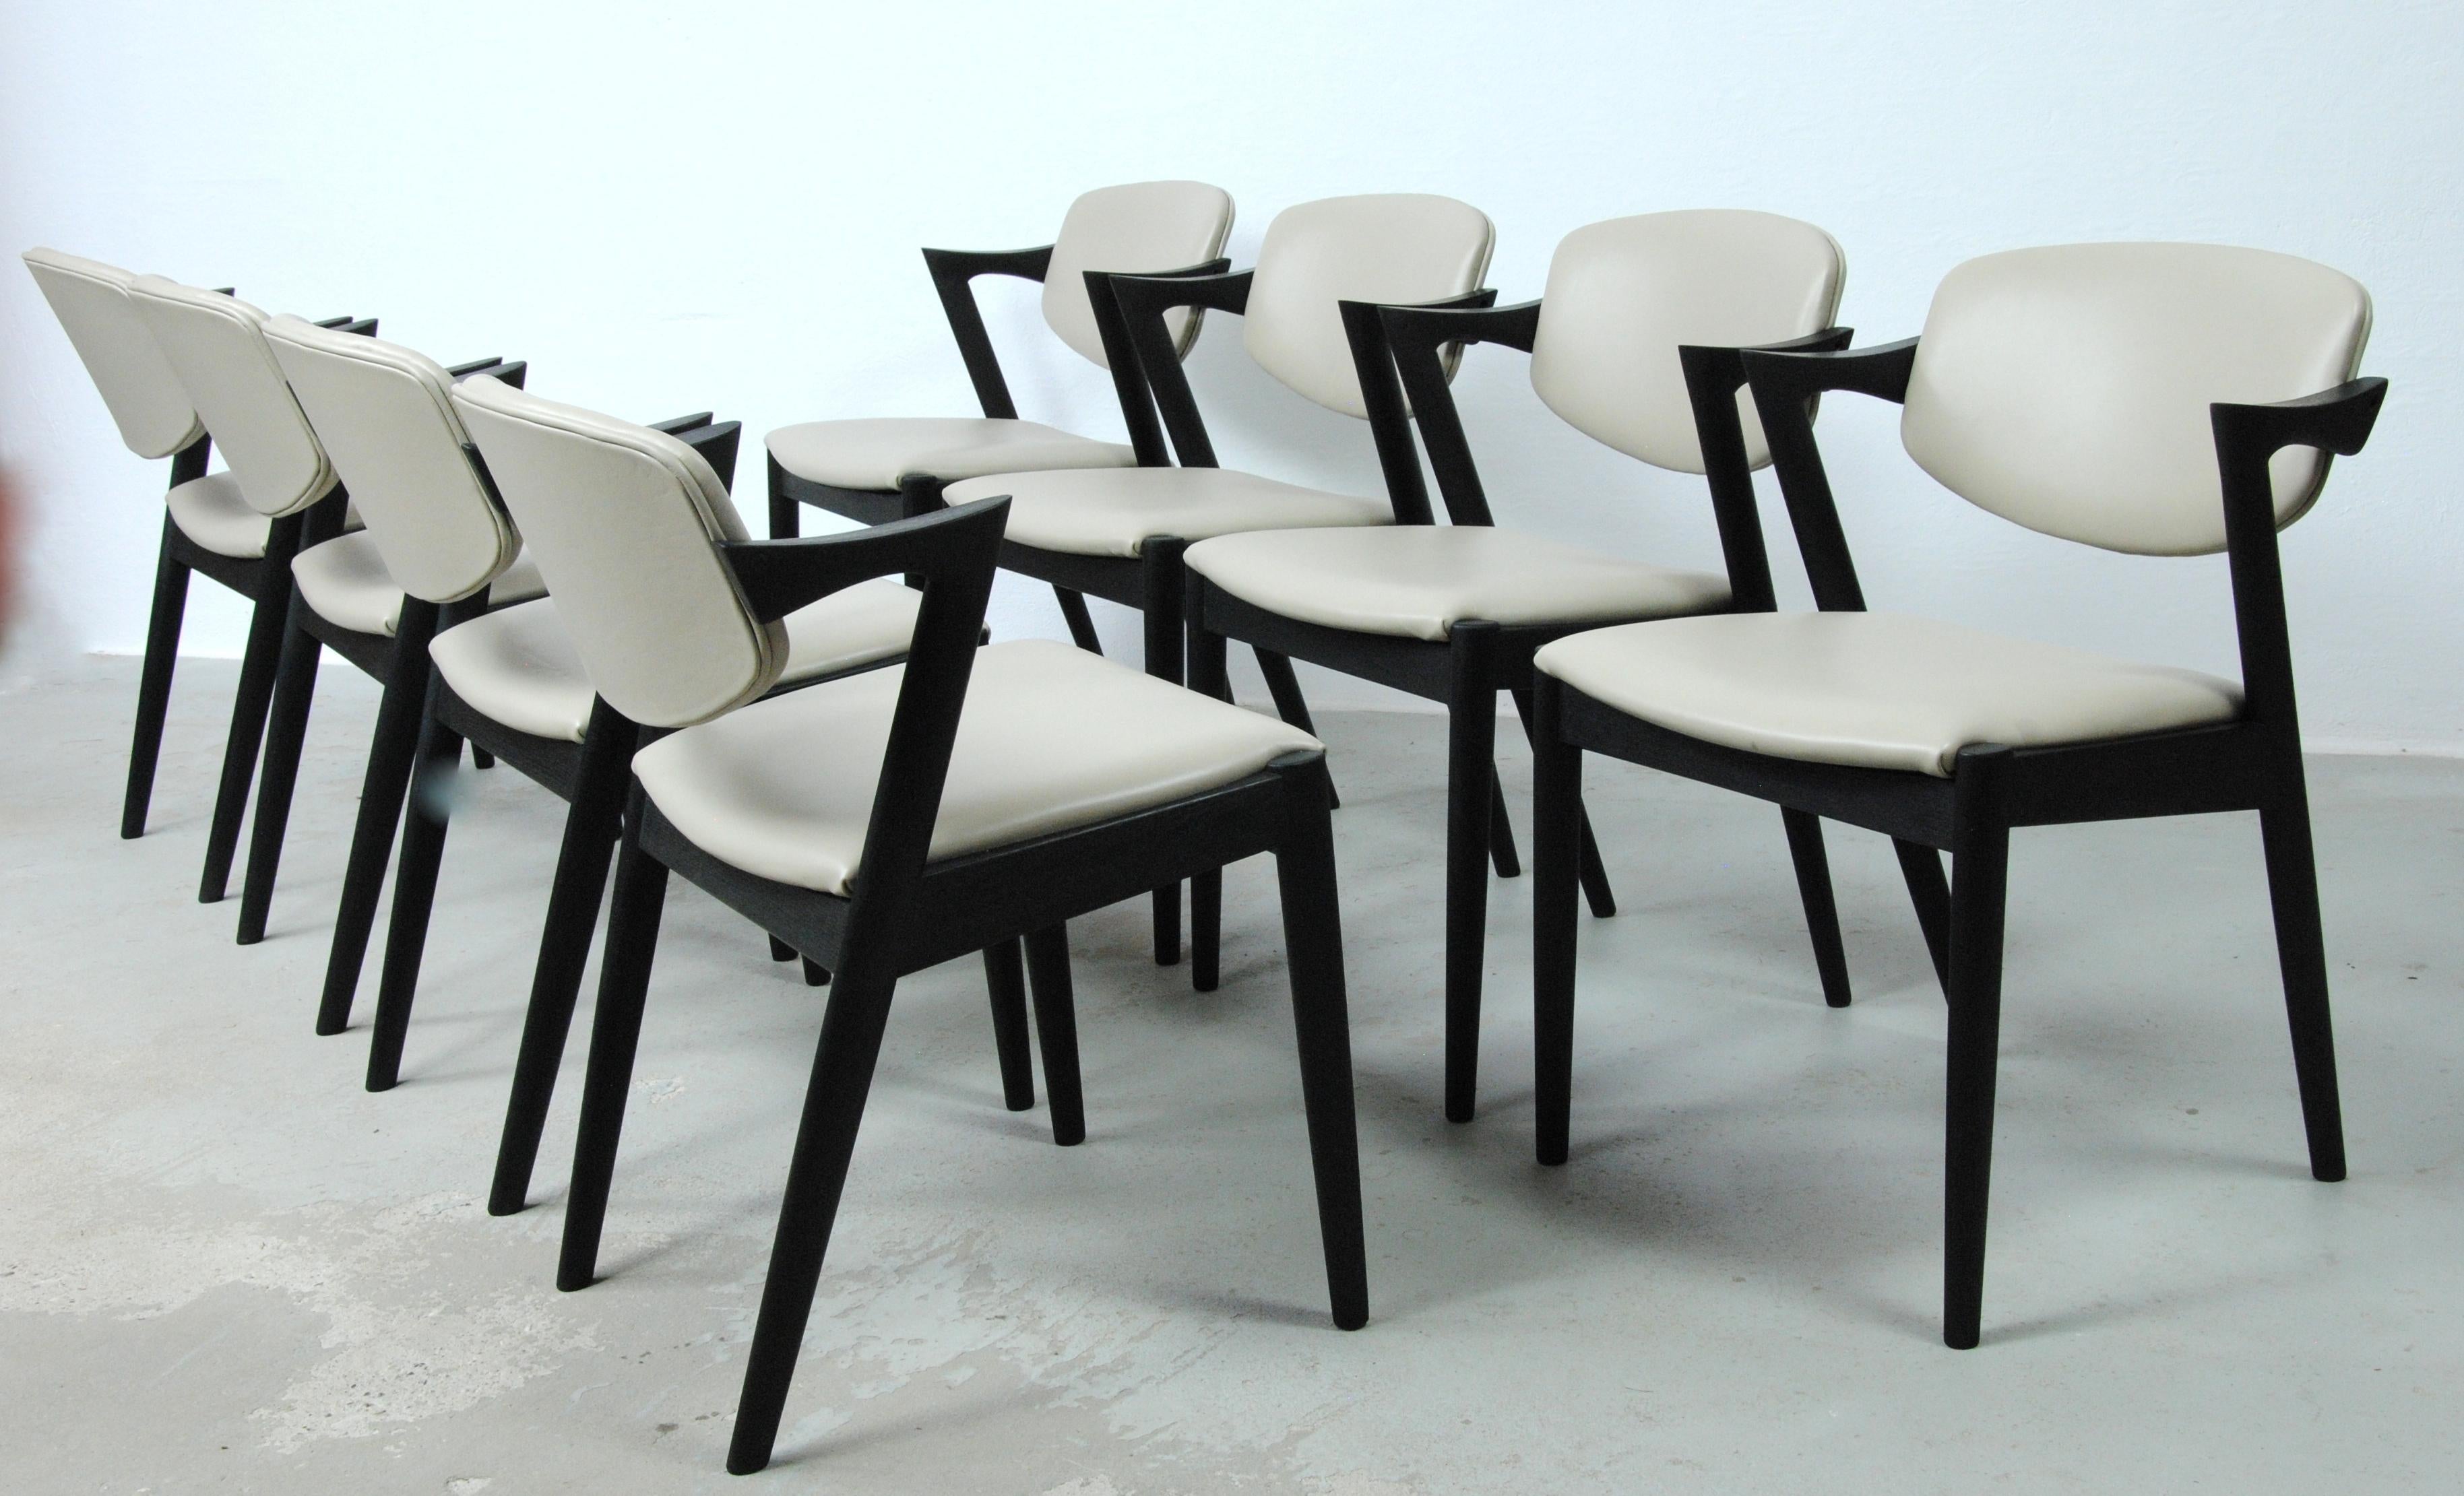 Ensemble de 8 chaises de salle à manger en chêne modèle 42 entièrement restaurées et ébénisées avec dossiers pivotants par Kai Kristiansen pour Schous Møbelfabrik, 

Les chaises ont le design léger et élégant typique de Kai Kristiansen qui leur